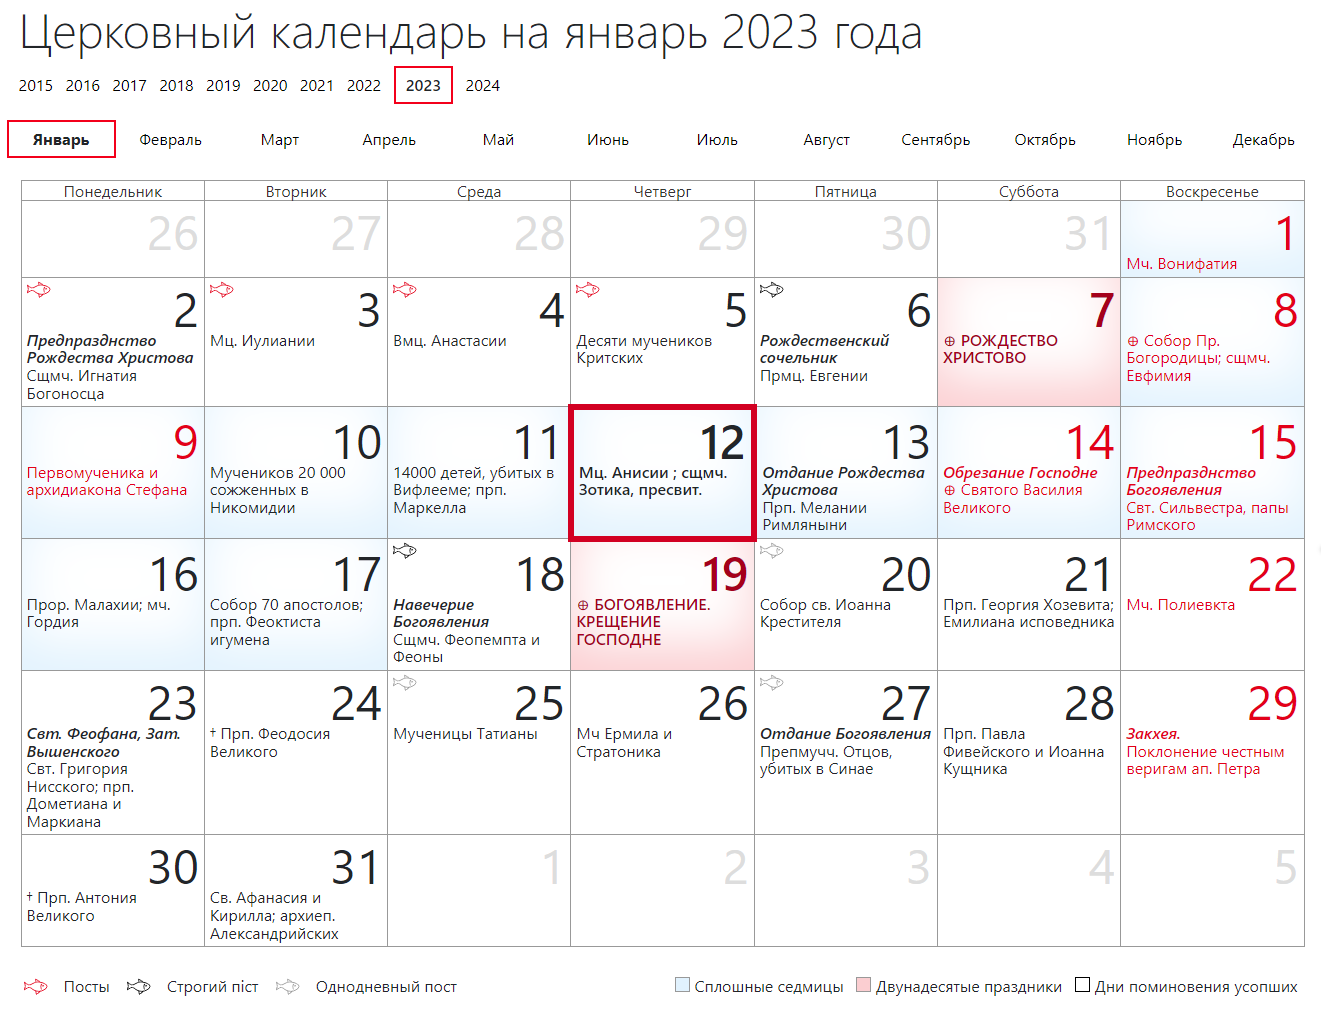 Церковный календарь на июнь 2023 года по юлианскому стилю